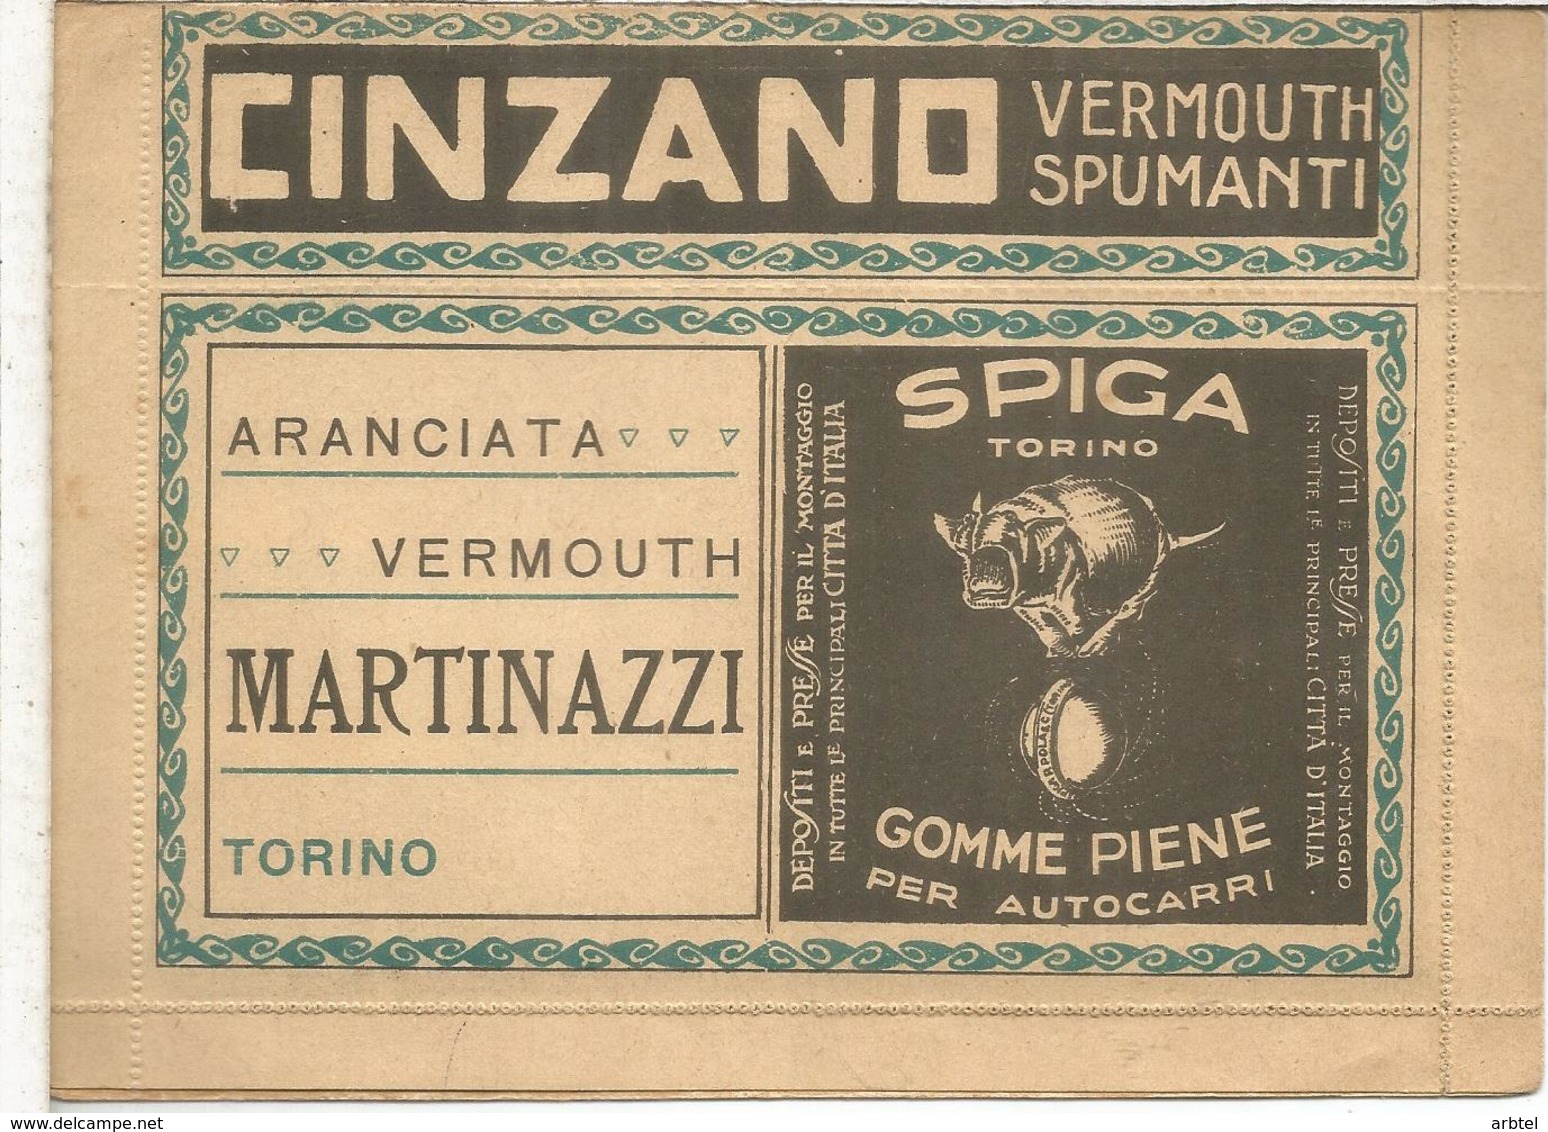 ITALIA BLP HACIA 1920S CARTA CON PUBLICIDAD DIVERSA LUZ CINZANO VERMOUTH VINO WINE NEUMATICO CHOCOLATE CACAO COCOA FARMA - Vinos Y Alcoholes